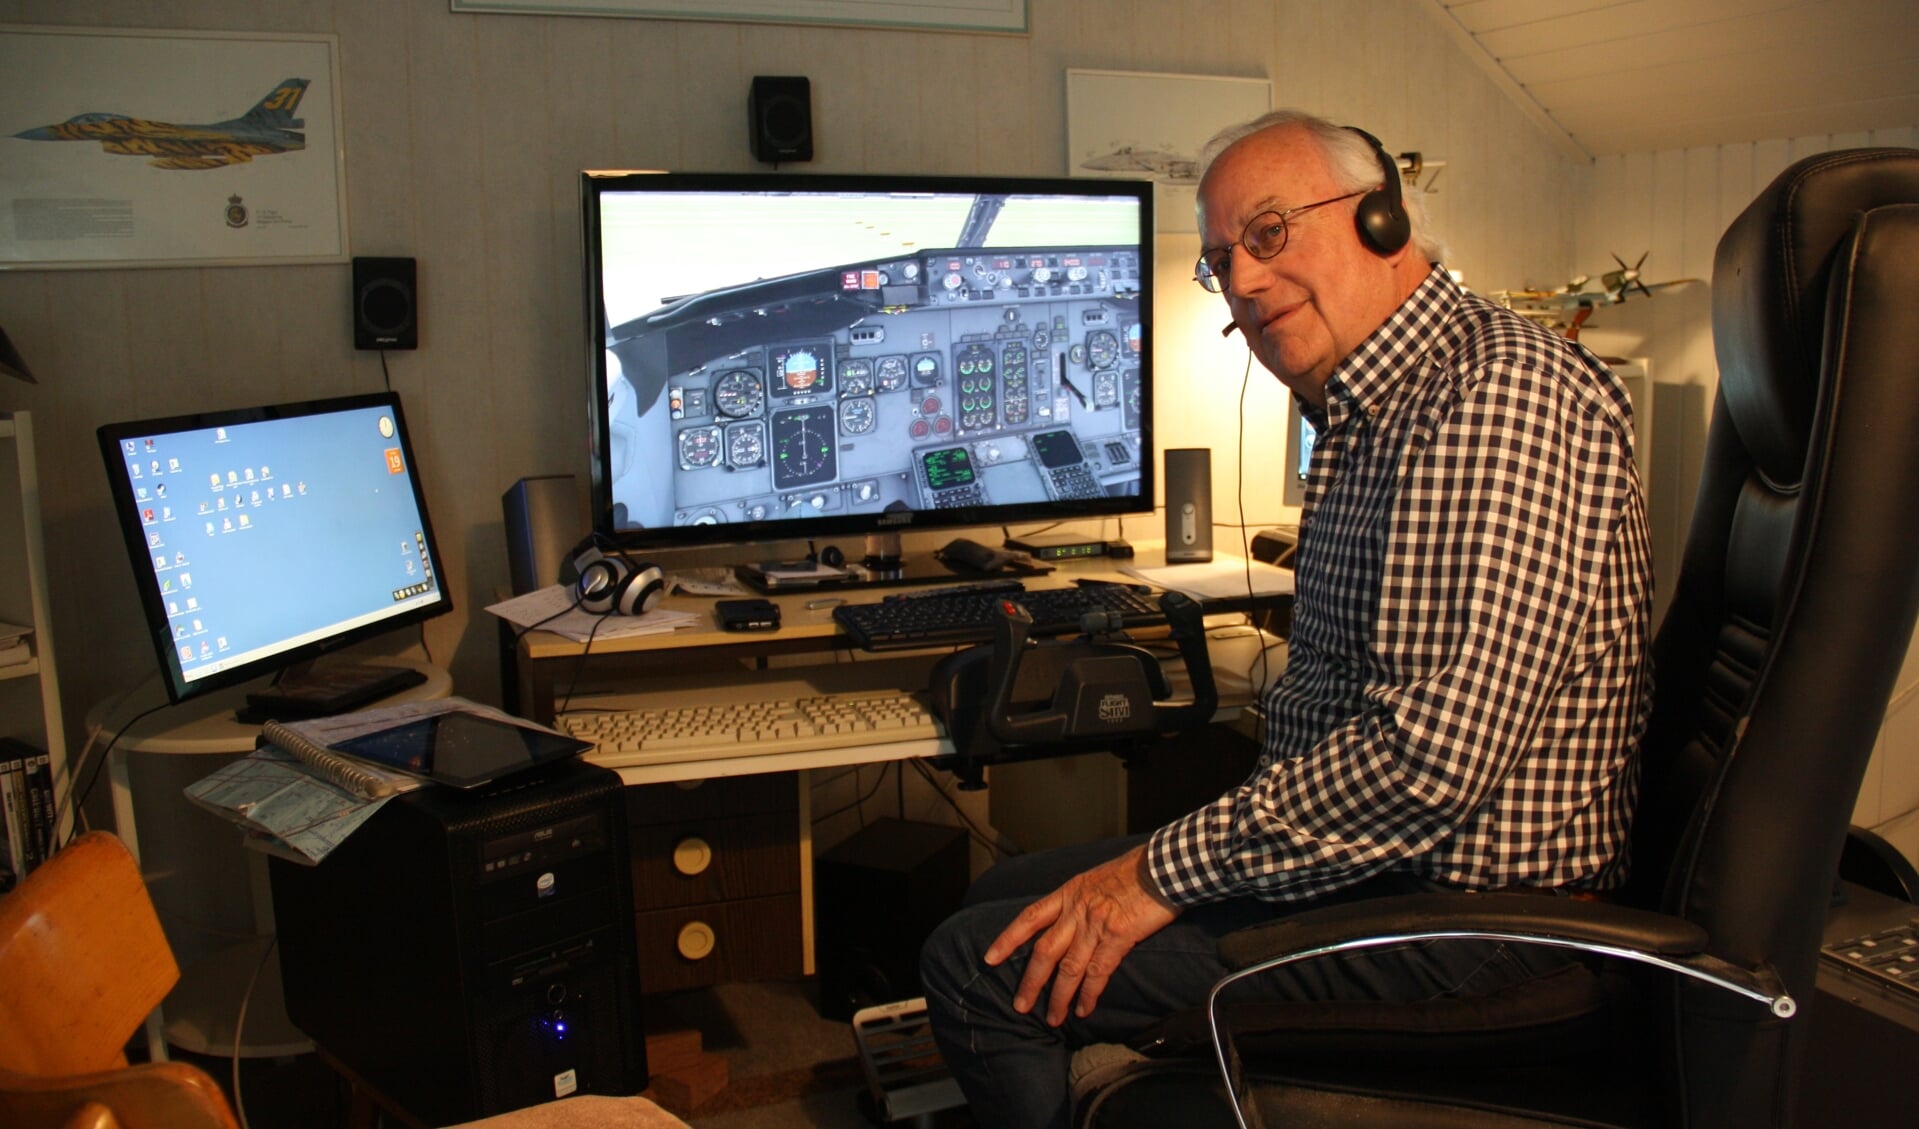 Achter de simulator kan Joris Kniep oefenen en vertrouwd raken met situaties op en rond vliegvelden in binnen- en buitenland. Het is soms niet van echt te onderscheiden.